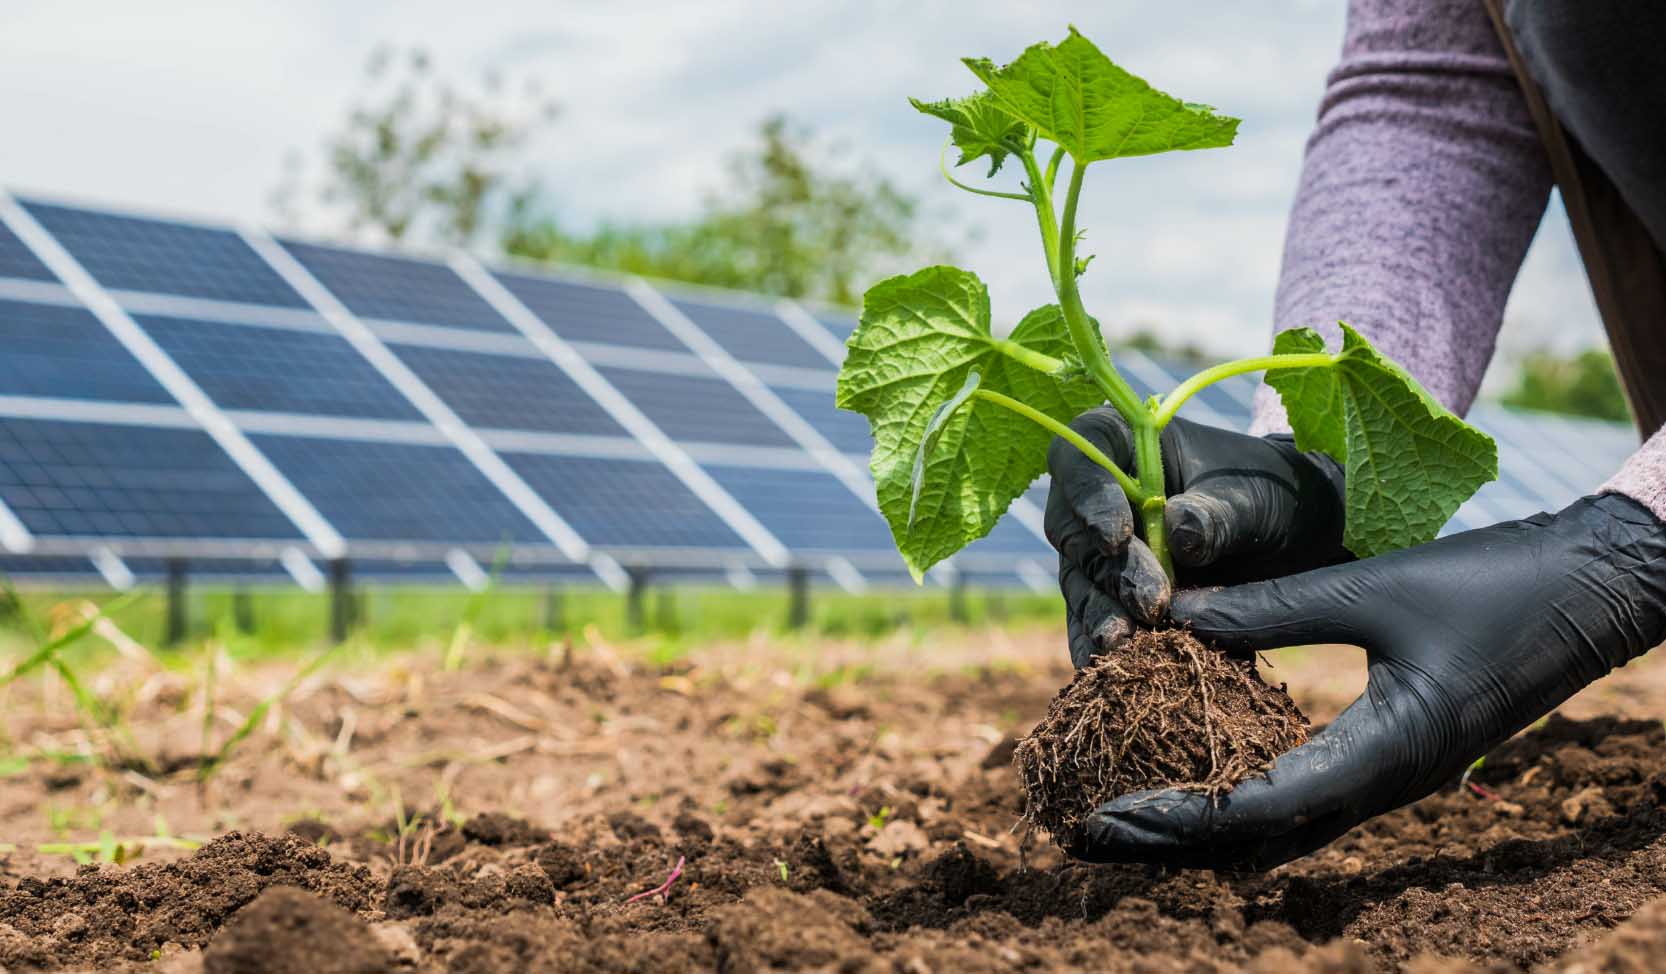 "Hände bei der Aussaat einer Pflanze im Gemüsegarten, mit Solarkraftwerkspaneelen im Hintergrund." 